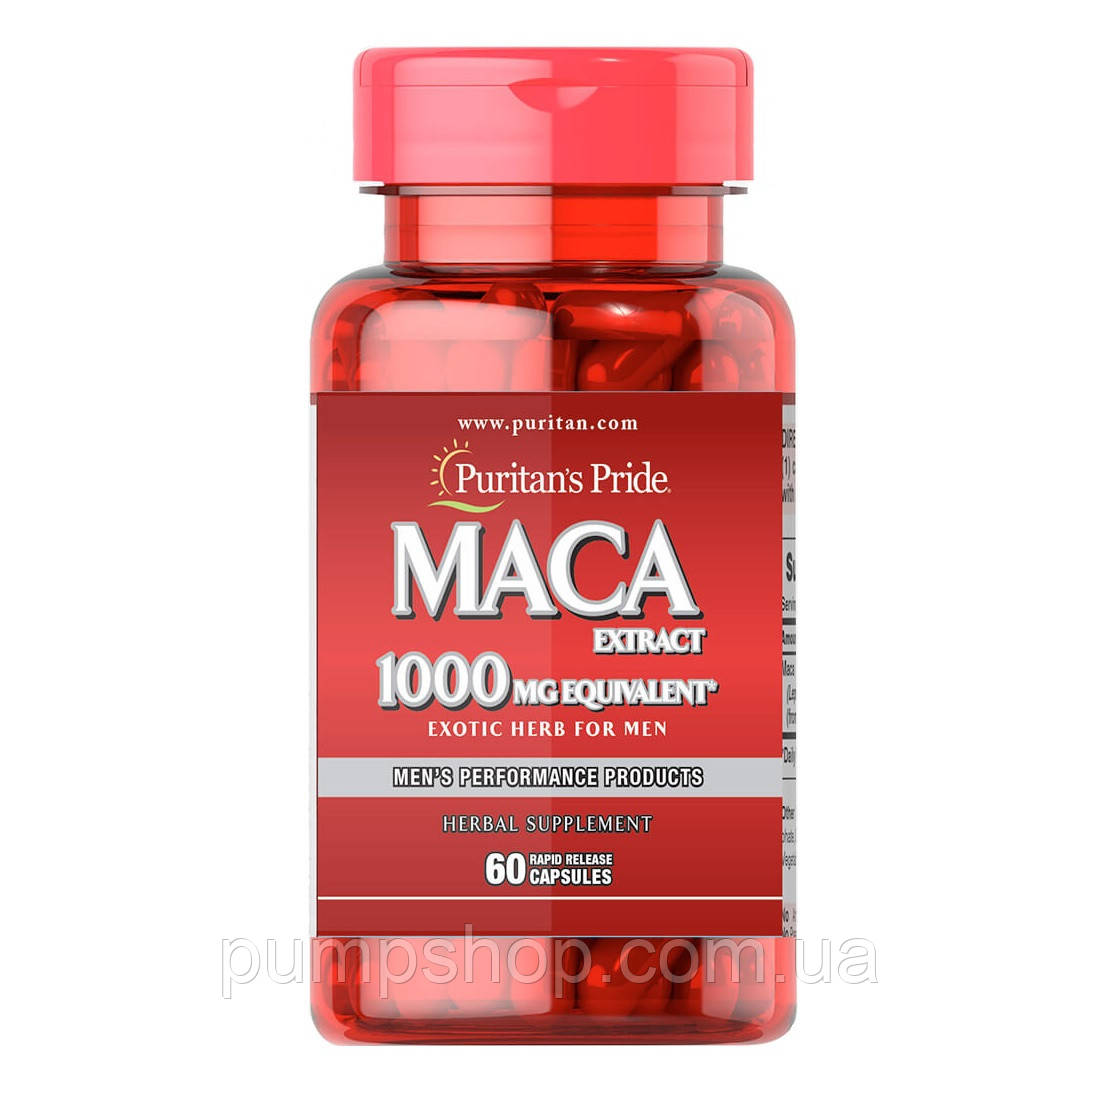 Для підвищення тестостерону Puritans Pride MACA Extract 1000 мг 60 капсул.